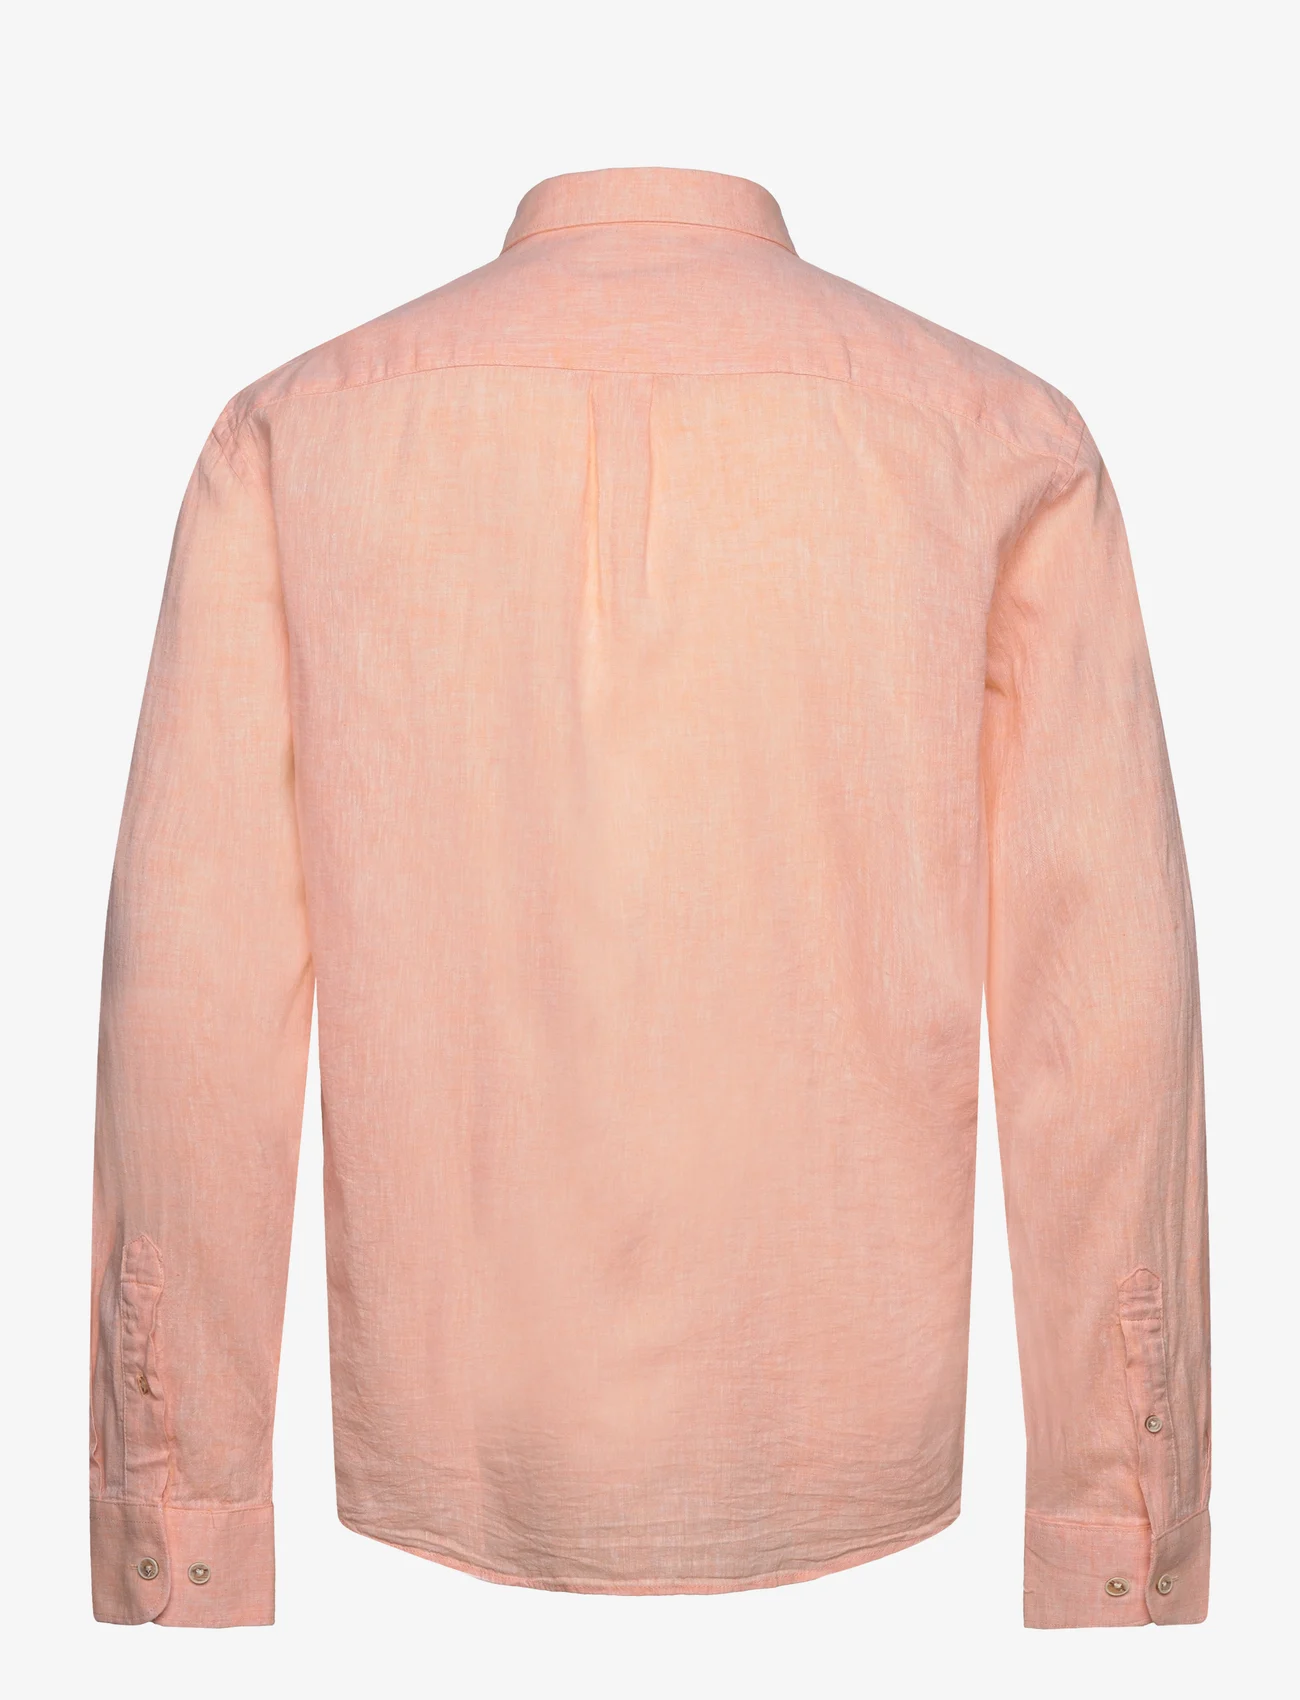 Lindbergh - Cotton/linen shirt L/S - linskjorter - lt peach - 1